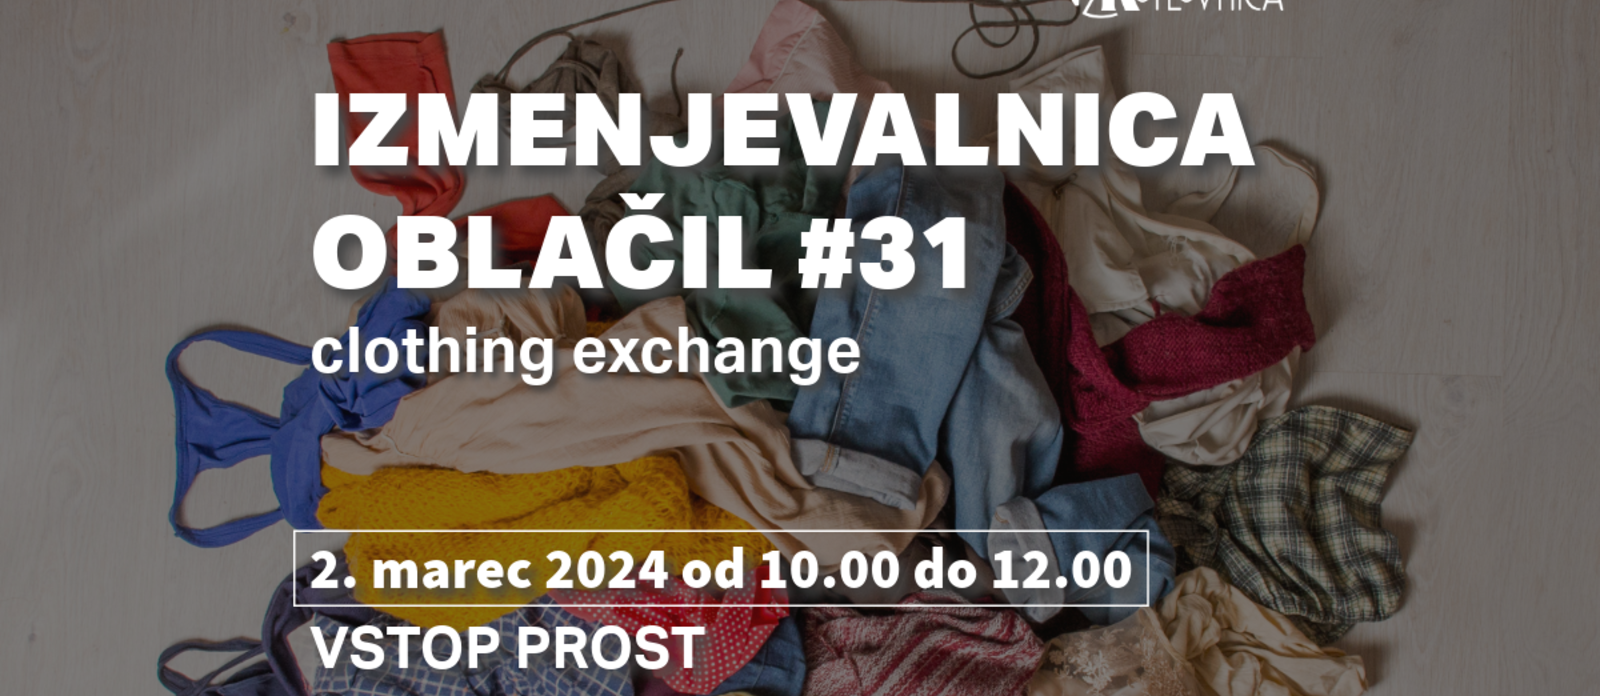 Izmenjevalnica oblačil #31 | clothing exchange